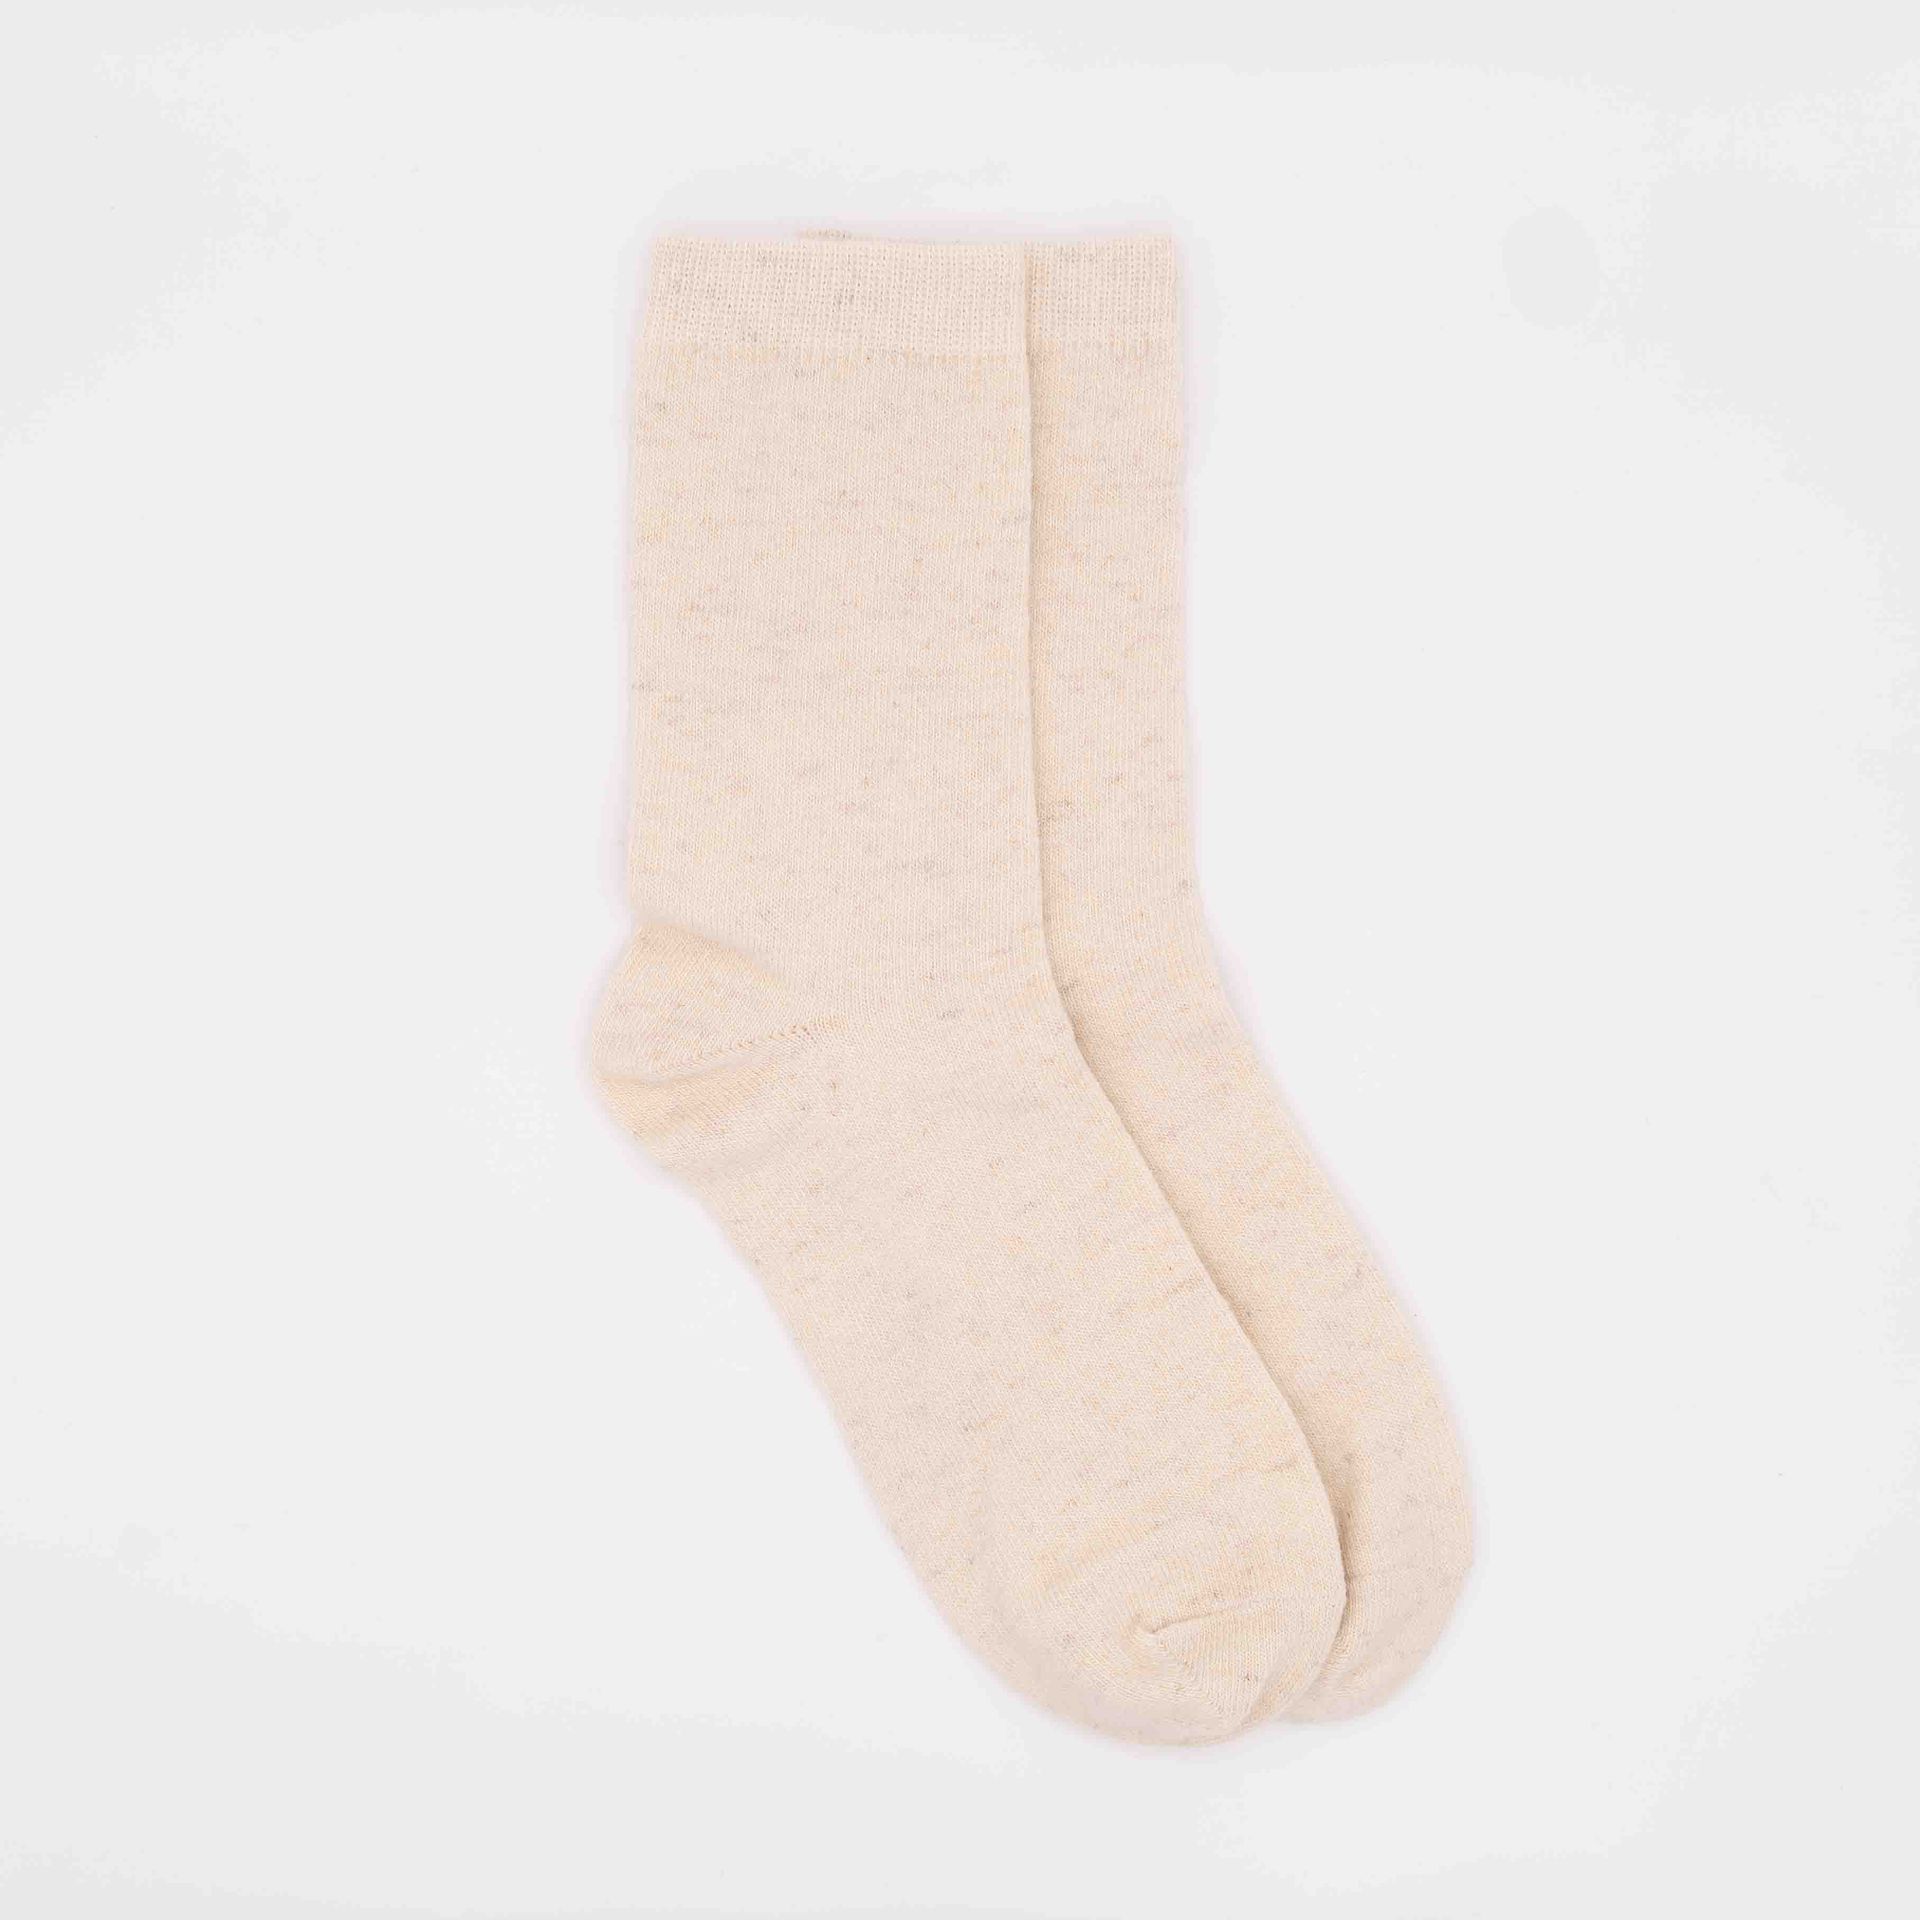 Weiße Socken aus Wolle liegen flach vor grauem Untergrund